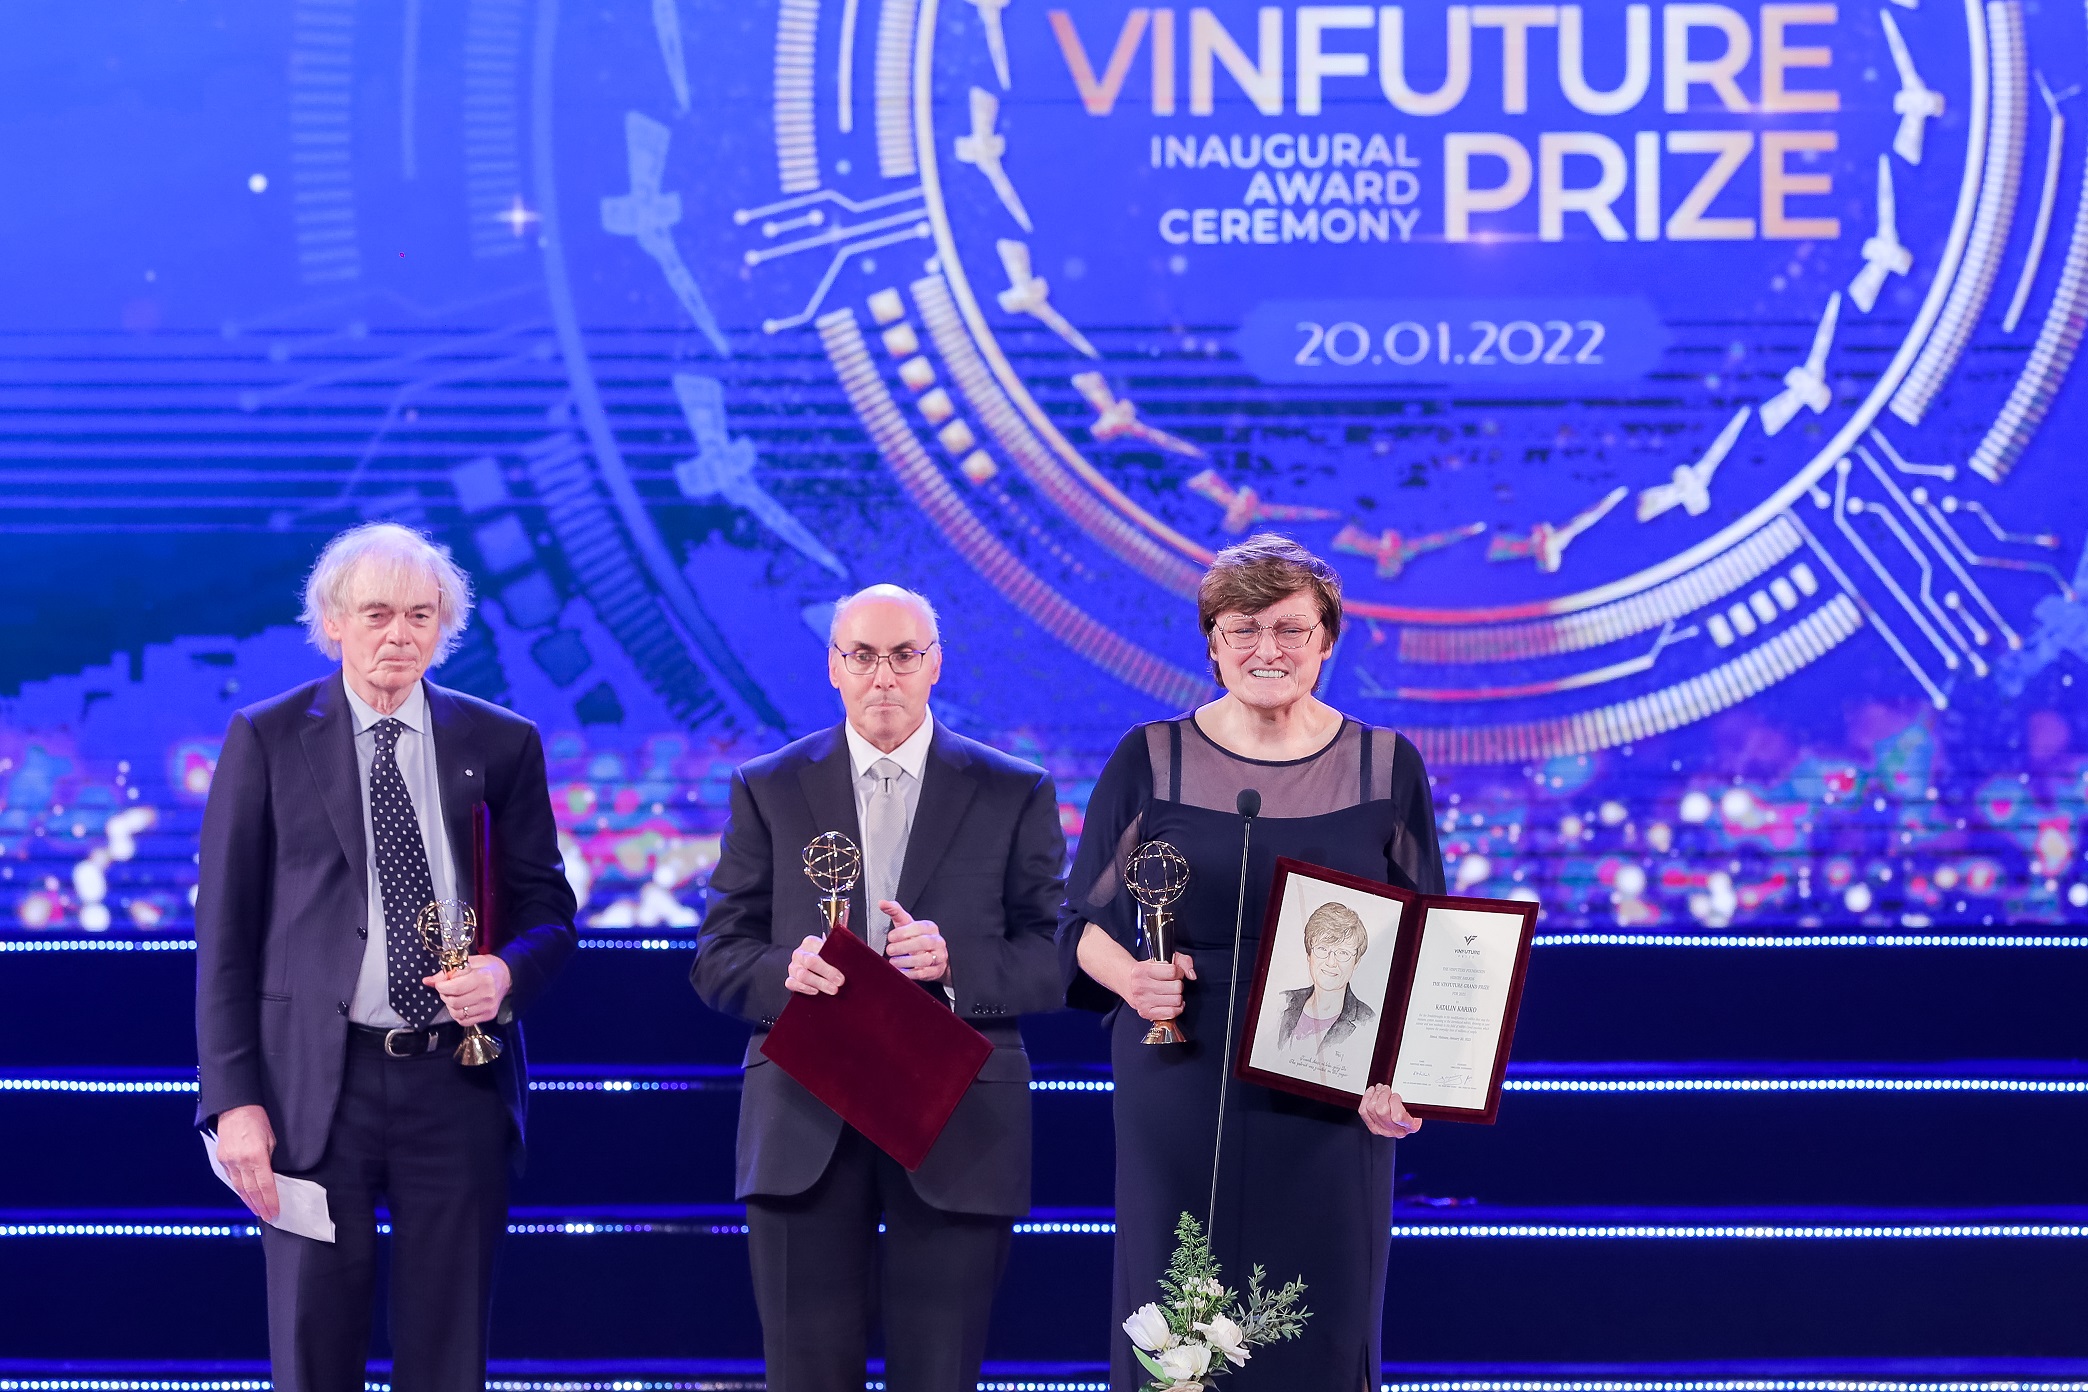 GS. Katalin Kariko và TS. Drew Weissman nhận Giải thưởng chính VinFuture mùa đầu tiên, tháng 1.2022 (Ảnh: VFP)